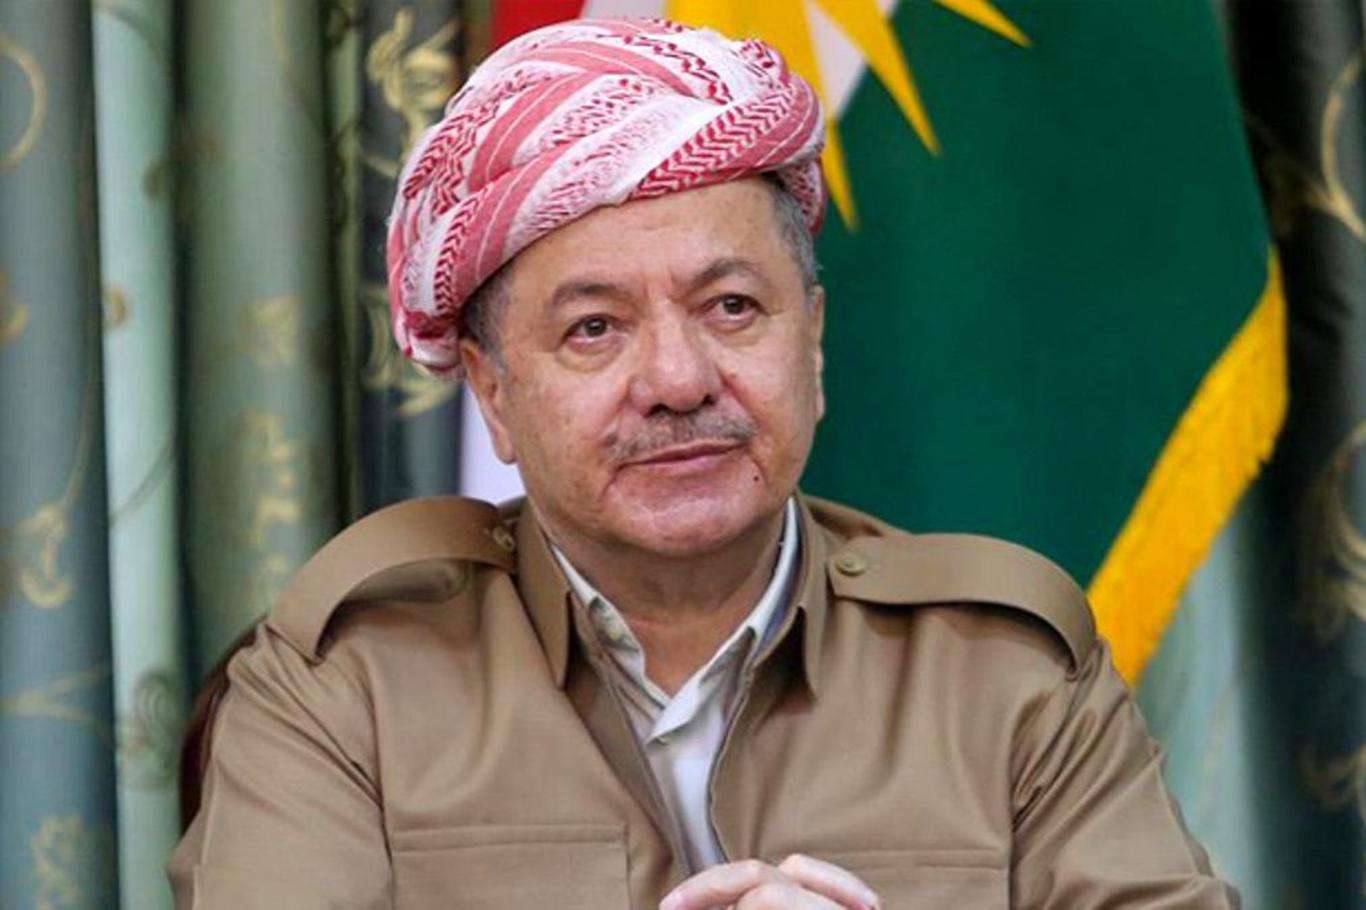 KDP lideri Barzani: "Peşmerge'yi şehit edenler hak ettikleri cezayı bulacak"